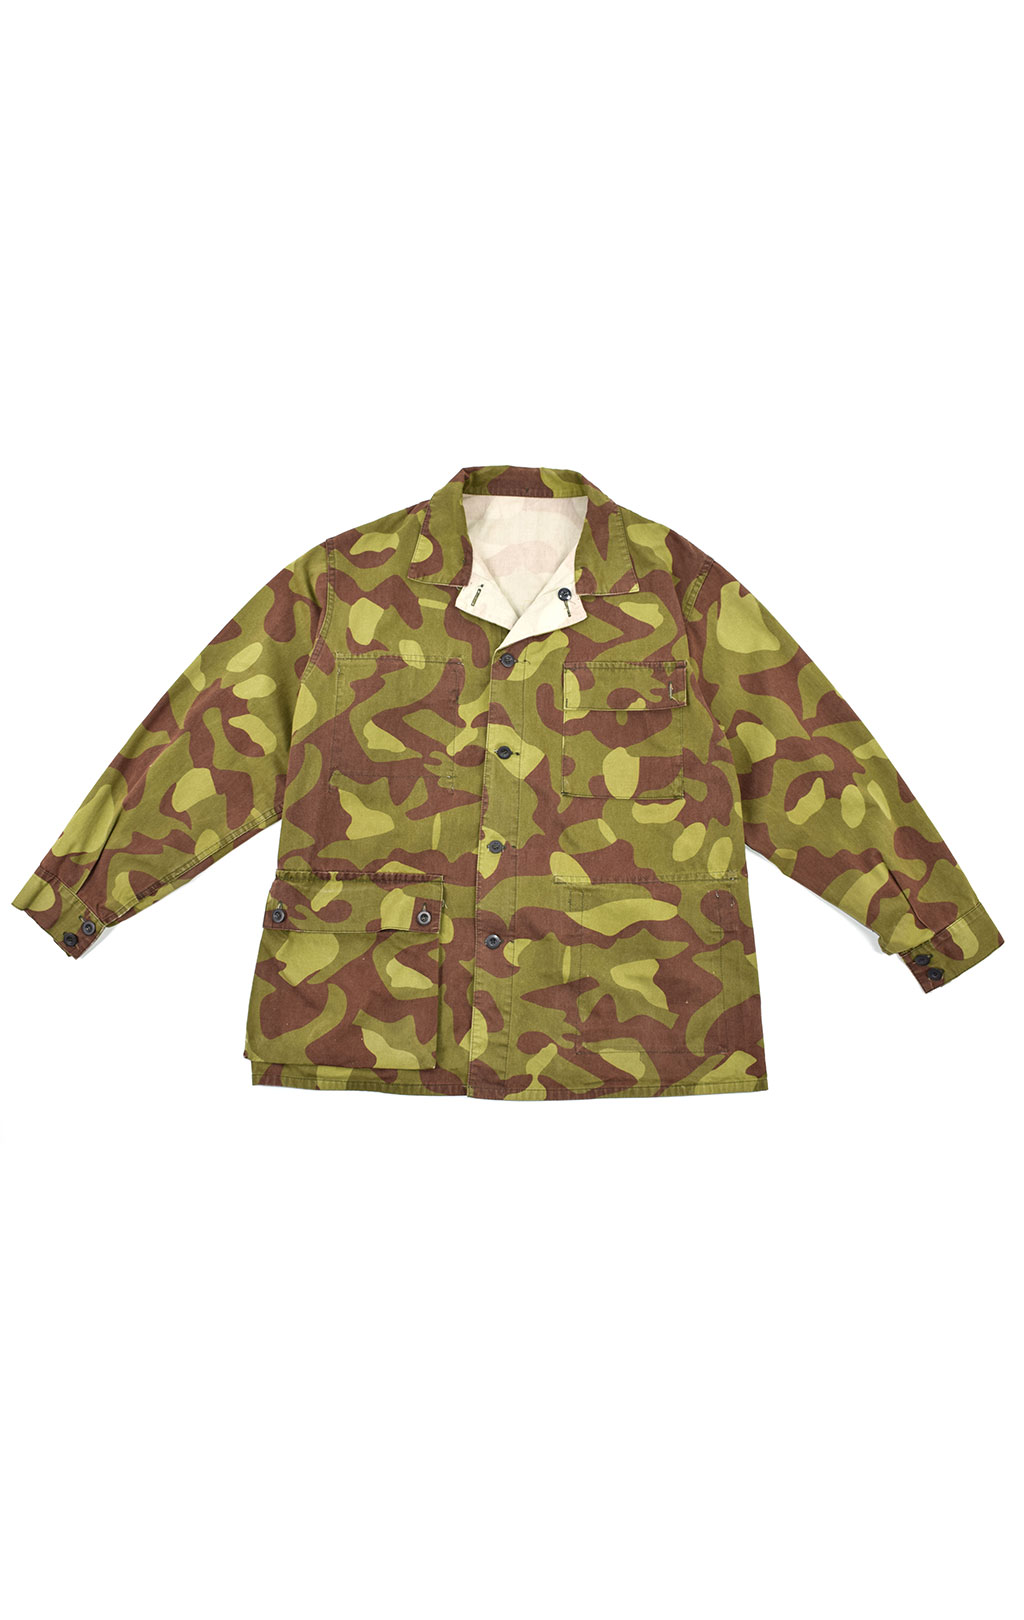 Куртка армейская VPU лёгкая camo б/у Финляндия